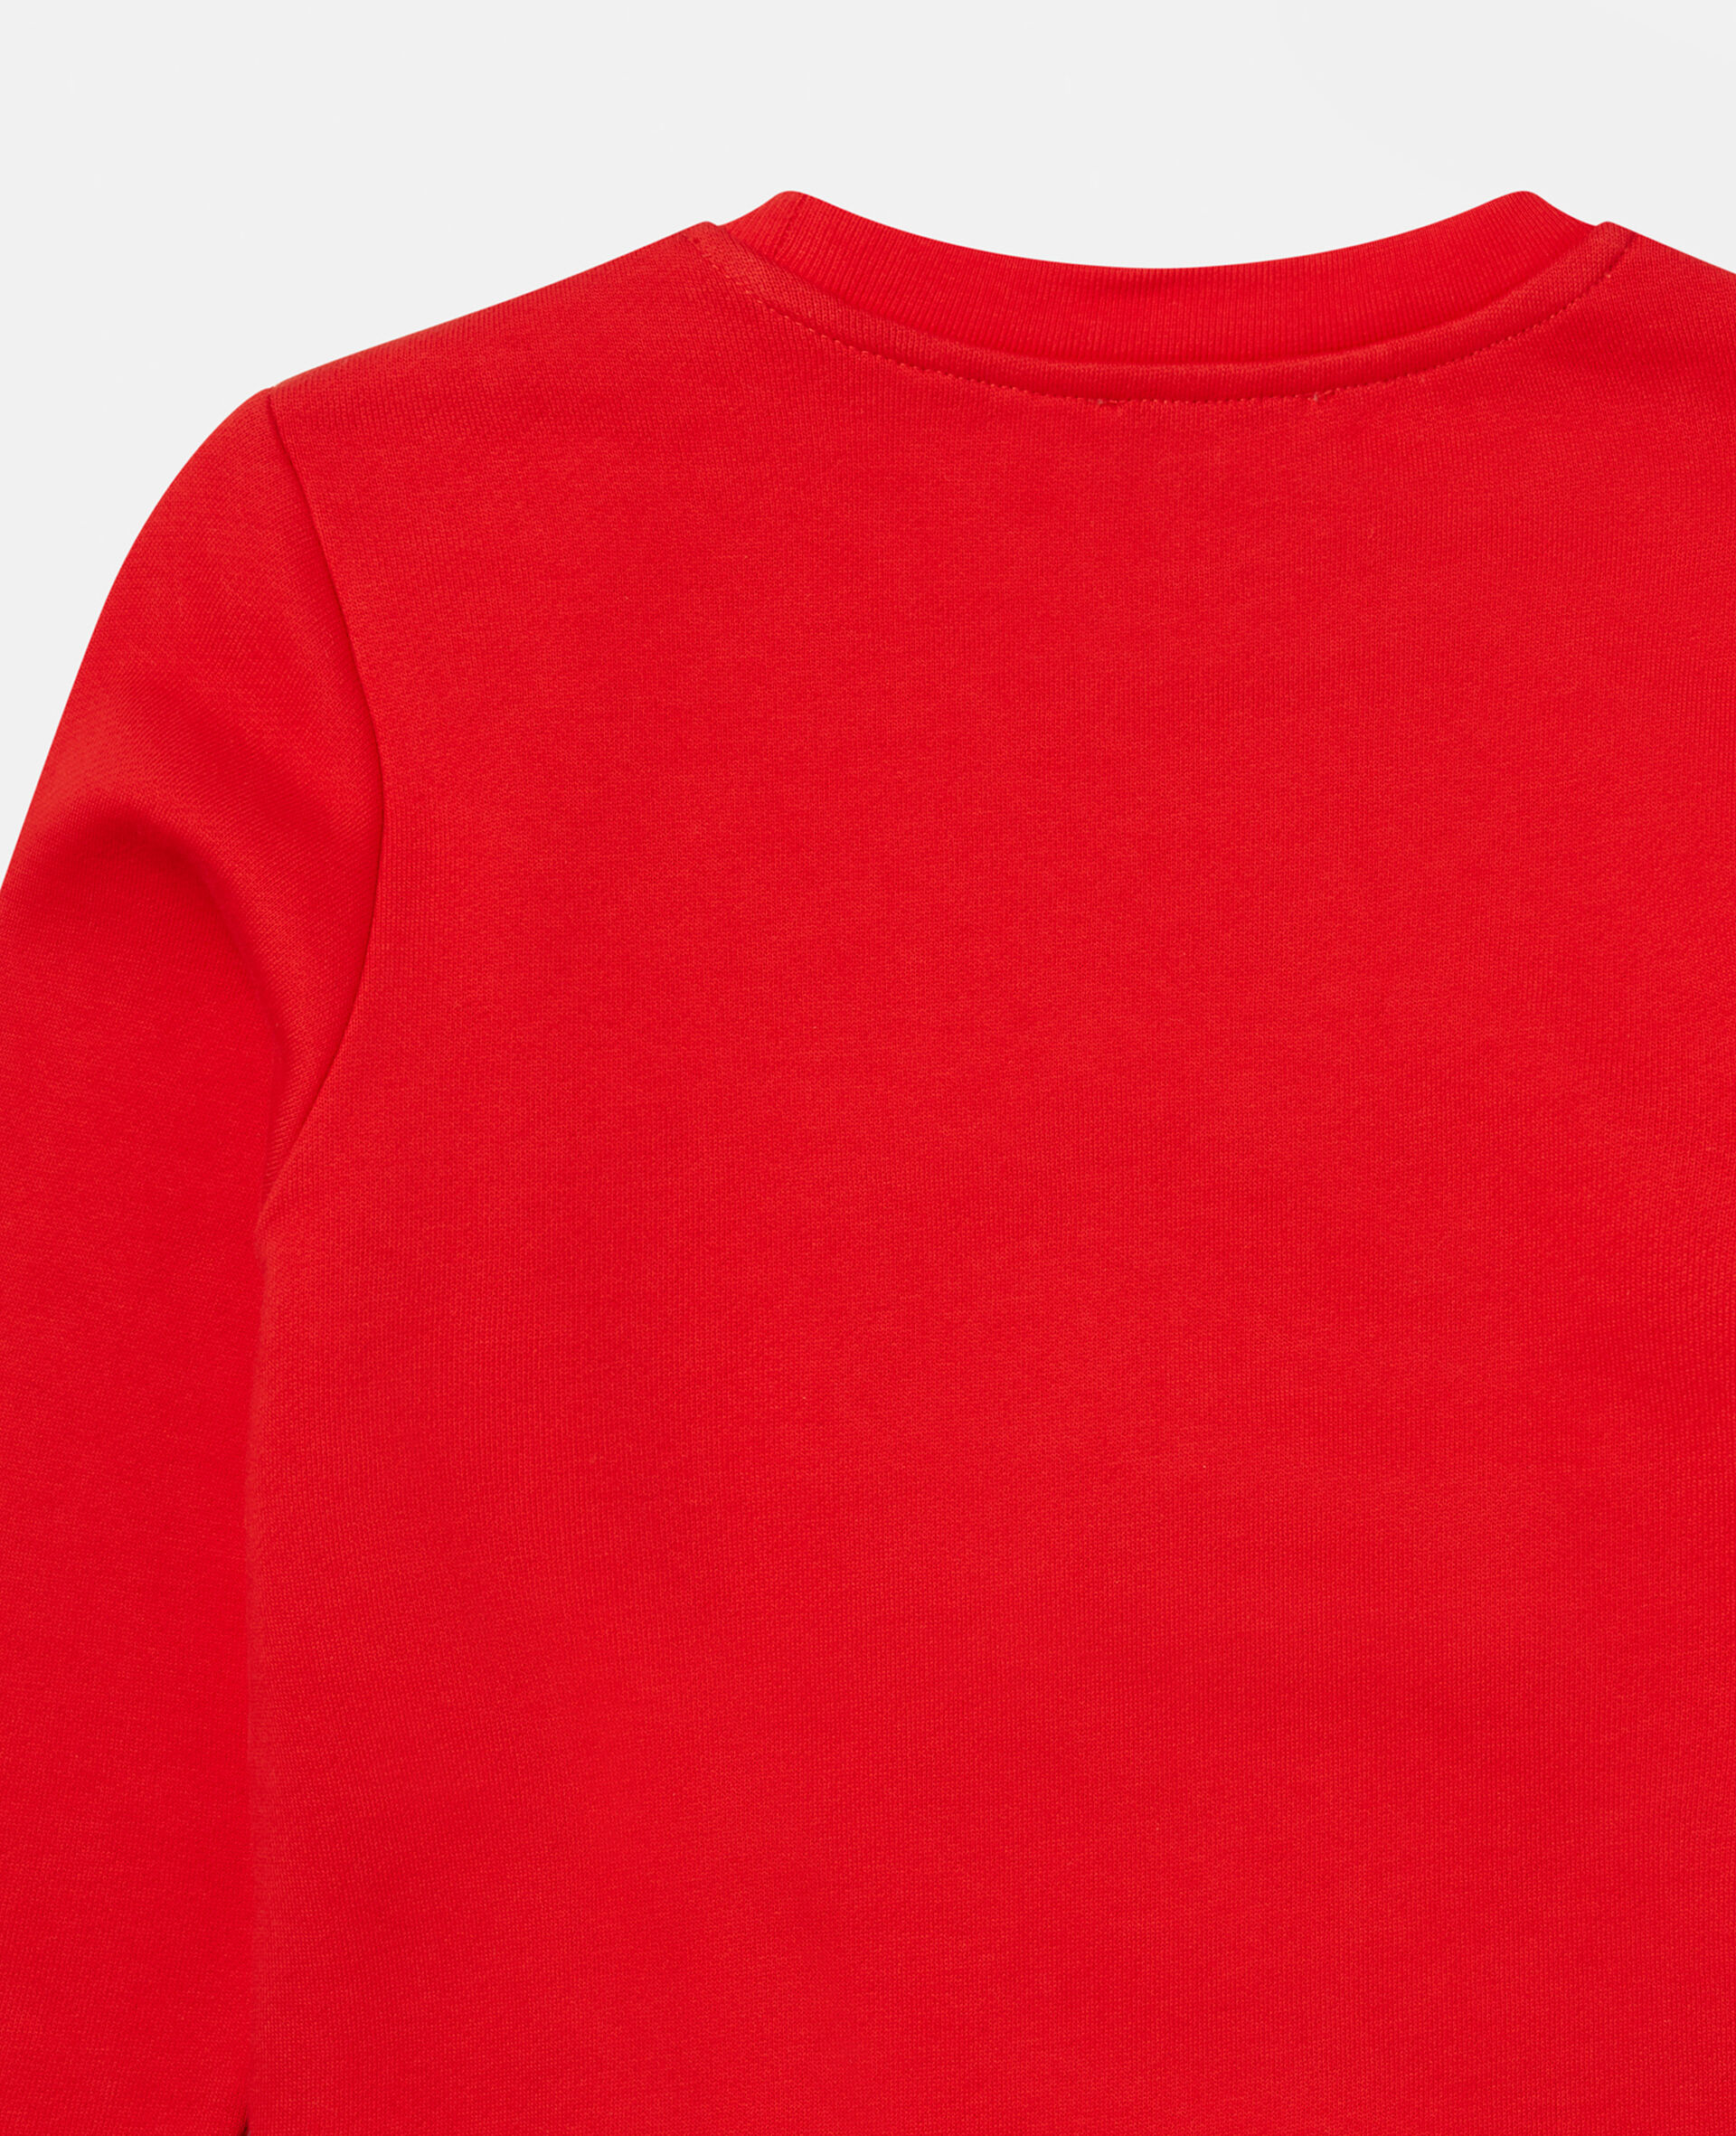 Zip Rainbow Face Fleece Sweatshirt-Red-large image number 2